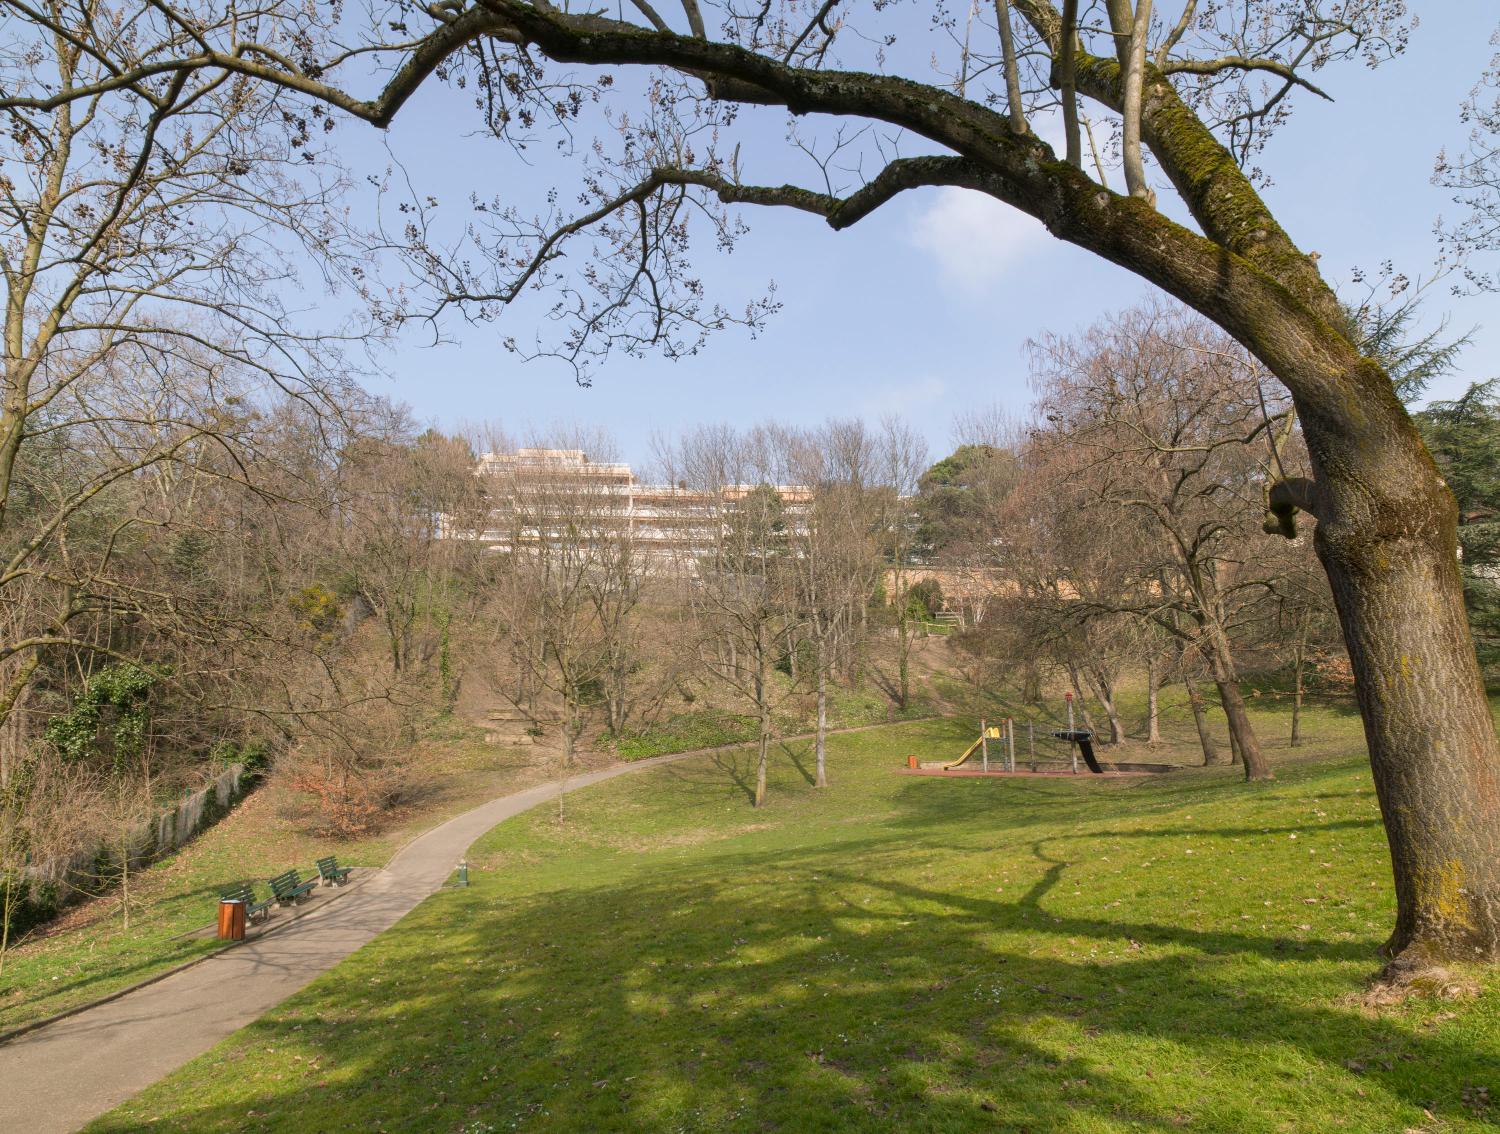 Demeure : villa Gillet actuellement parc public de la Cerisaie